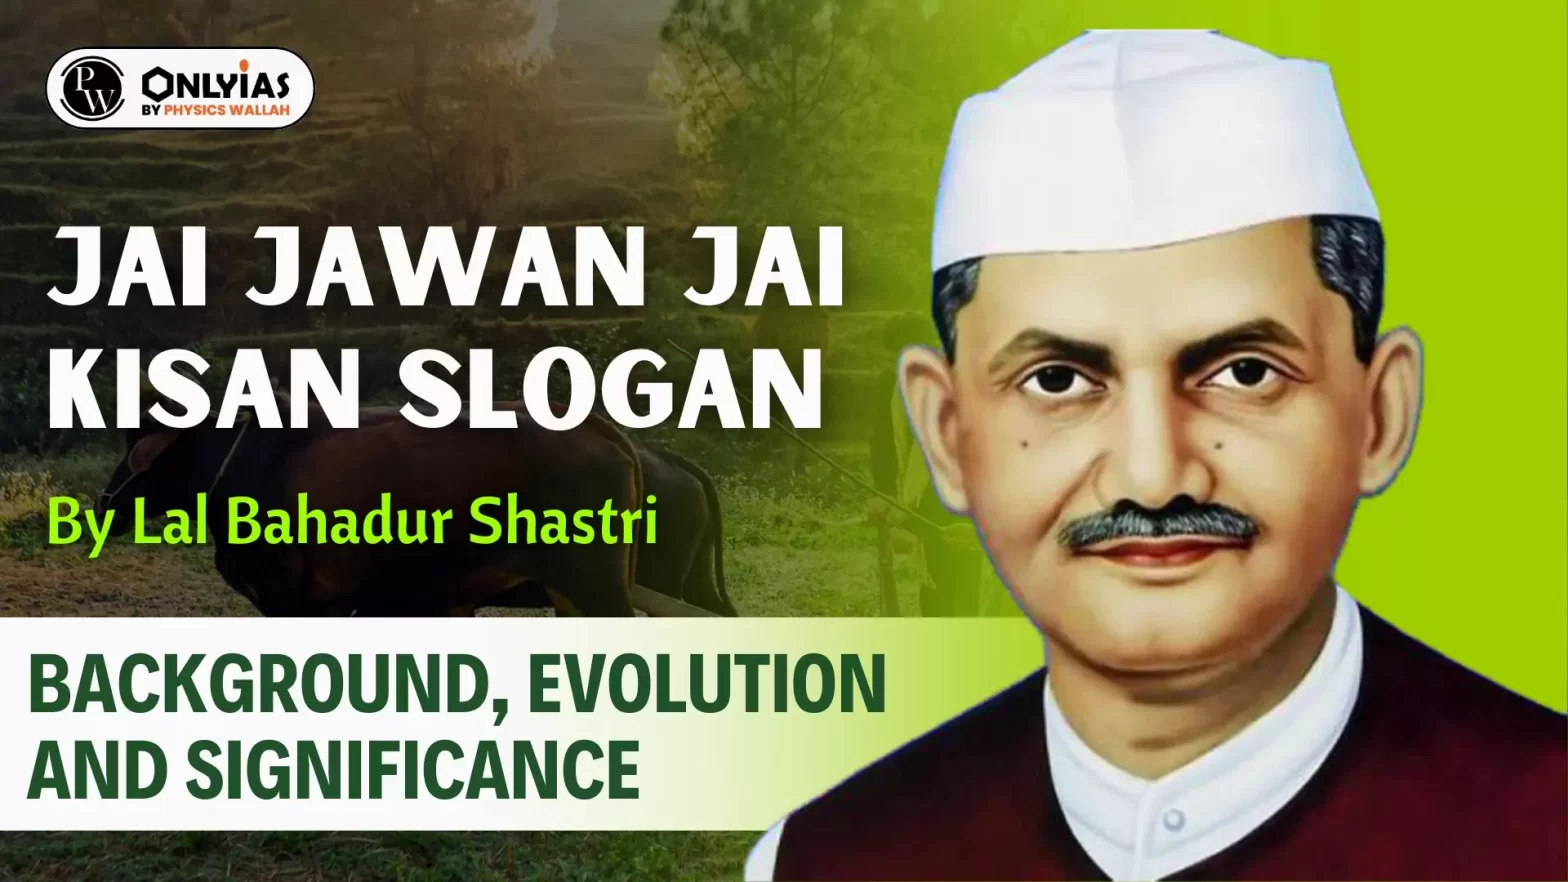 Jai Jawan Jai Kisan Slogan By Lal Bahadur Shastri: Background, Evolution and Significance